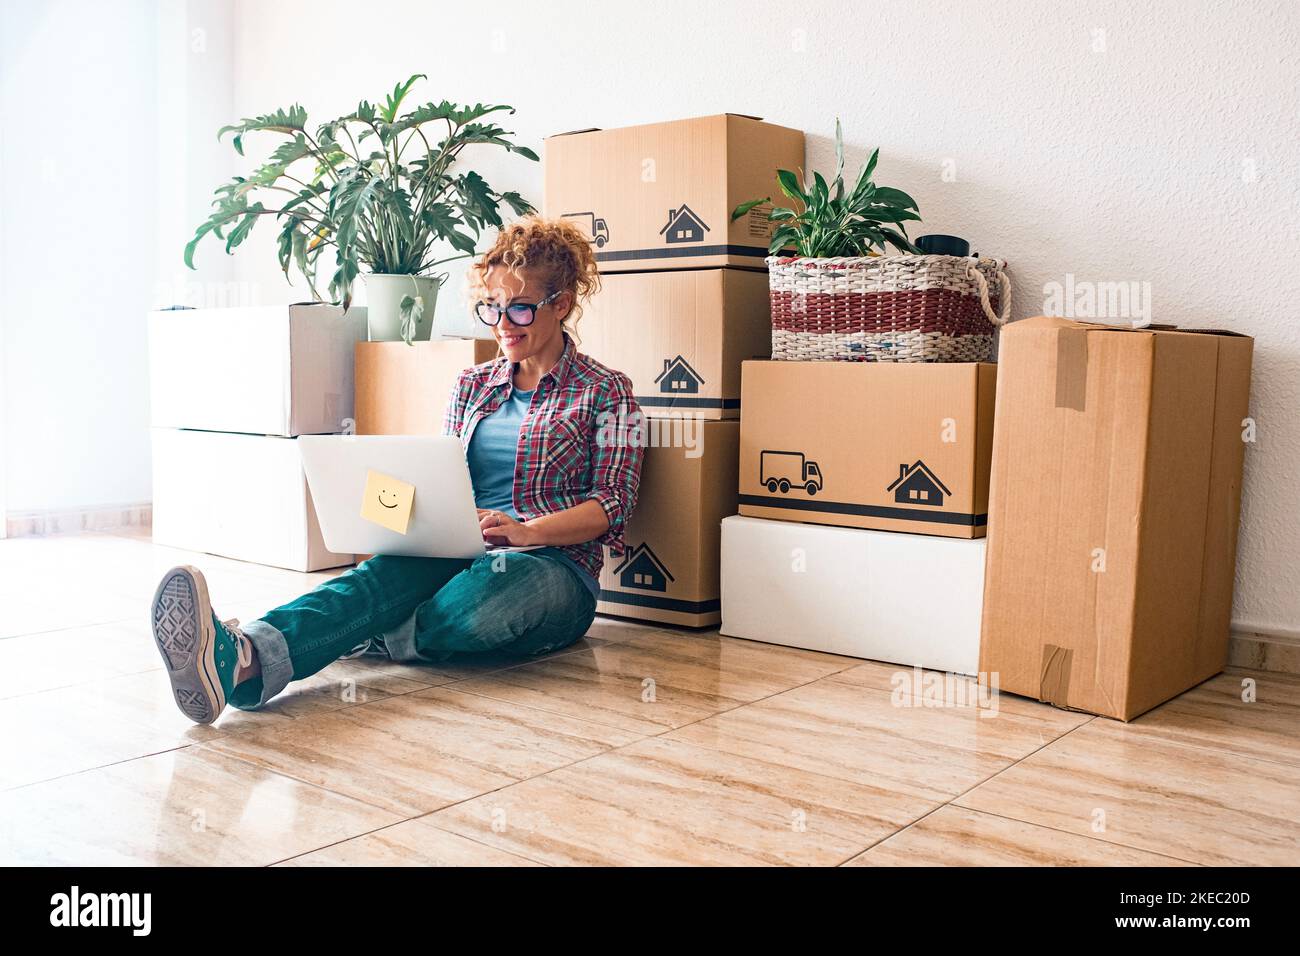 Eine junge Frau und glückliche Menschen kaufen ein neues Haus oder eine Wohnung zusammen, um zusammen zu leben - Person auf dem Boden mit Laptop mit Boxen und Packungen auf dem Rücken Stockfoto